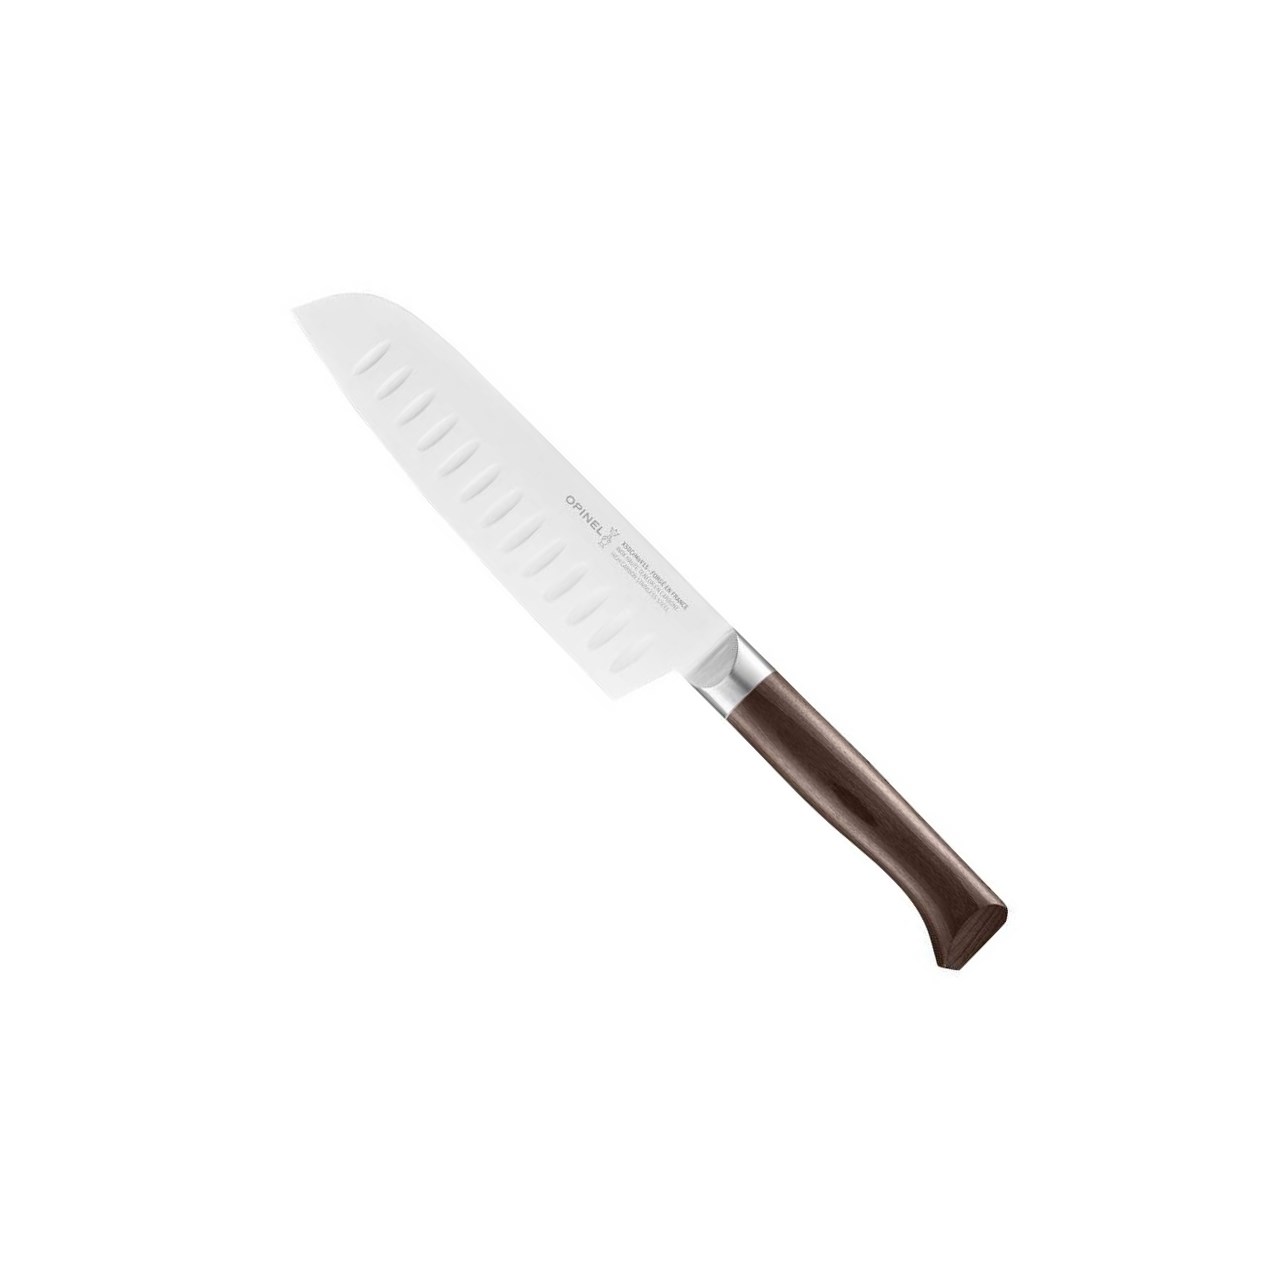 Santoku nůž Les Forges 1890, 17 cm - Opinel